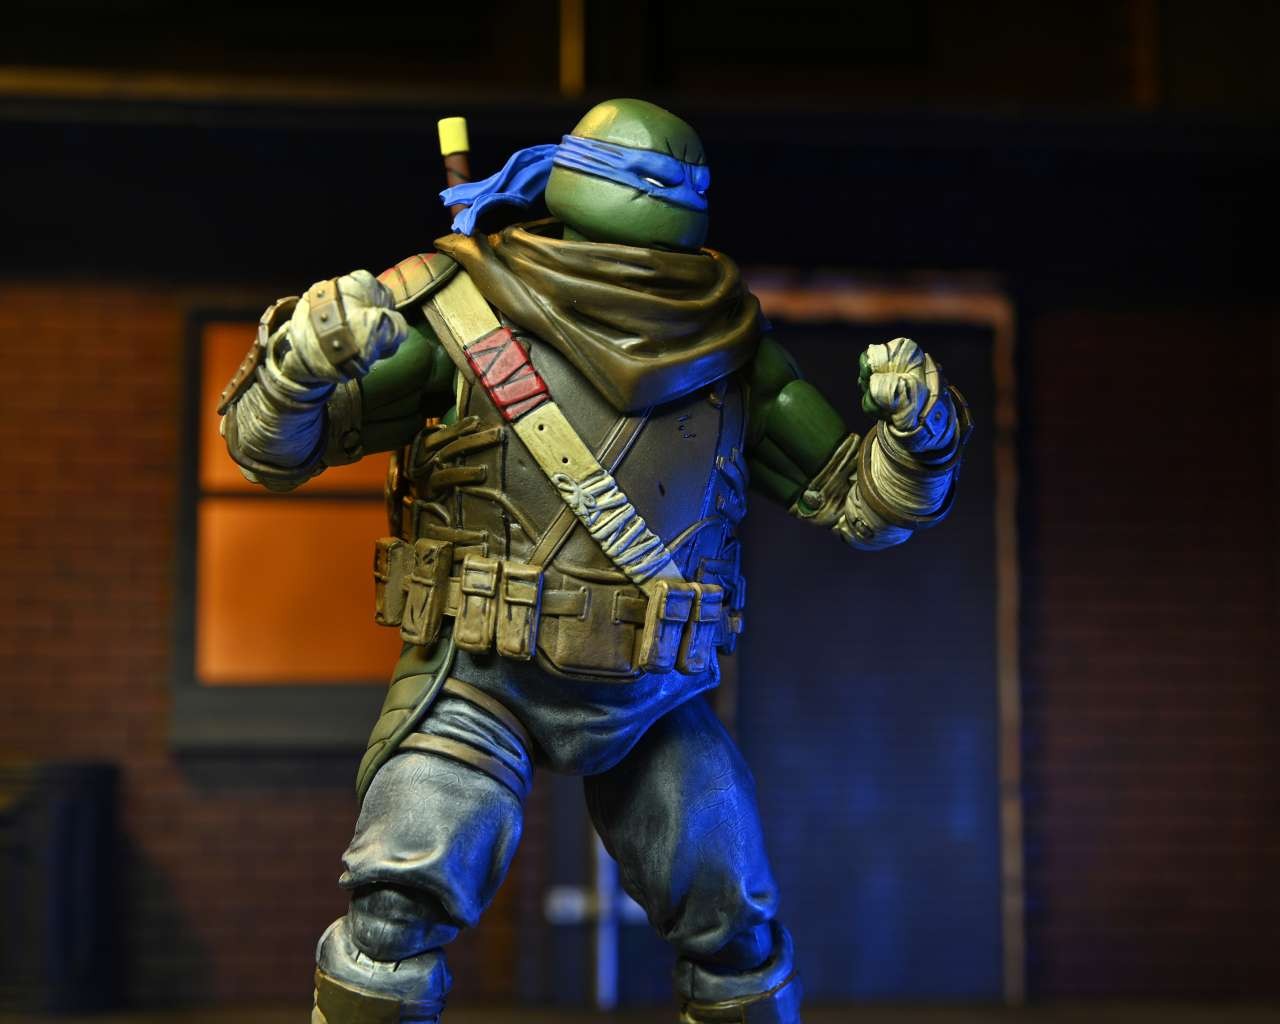 Teenage Mutant Ninja Turtles Action Figure Statue Model Toy TMNT  1990/Movie_Leonardo (Blue)